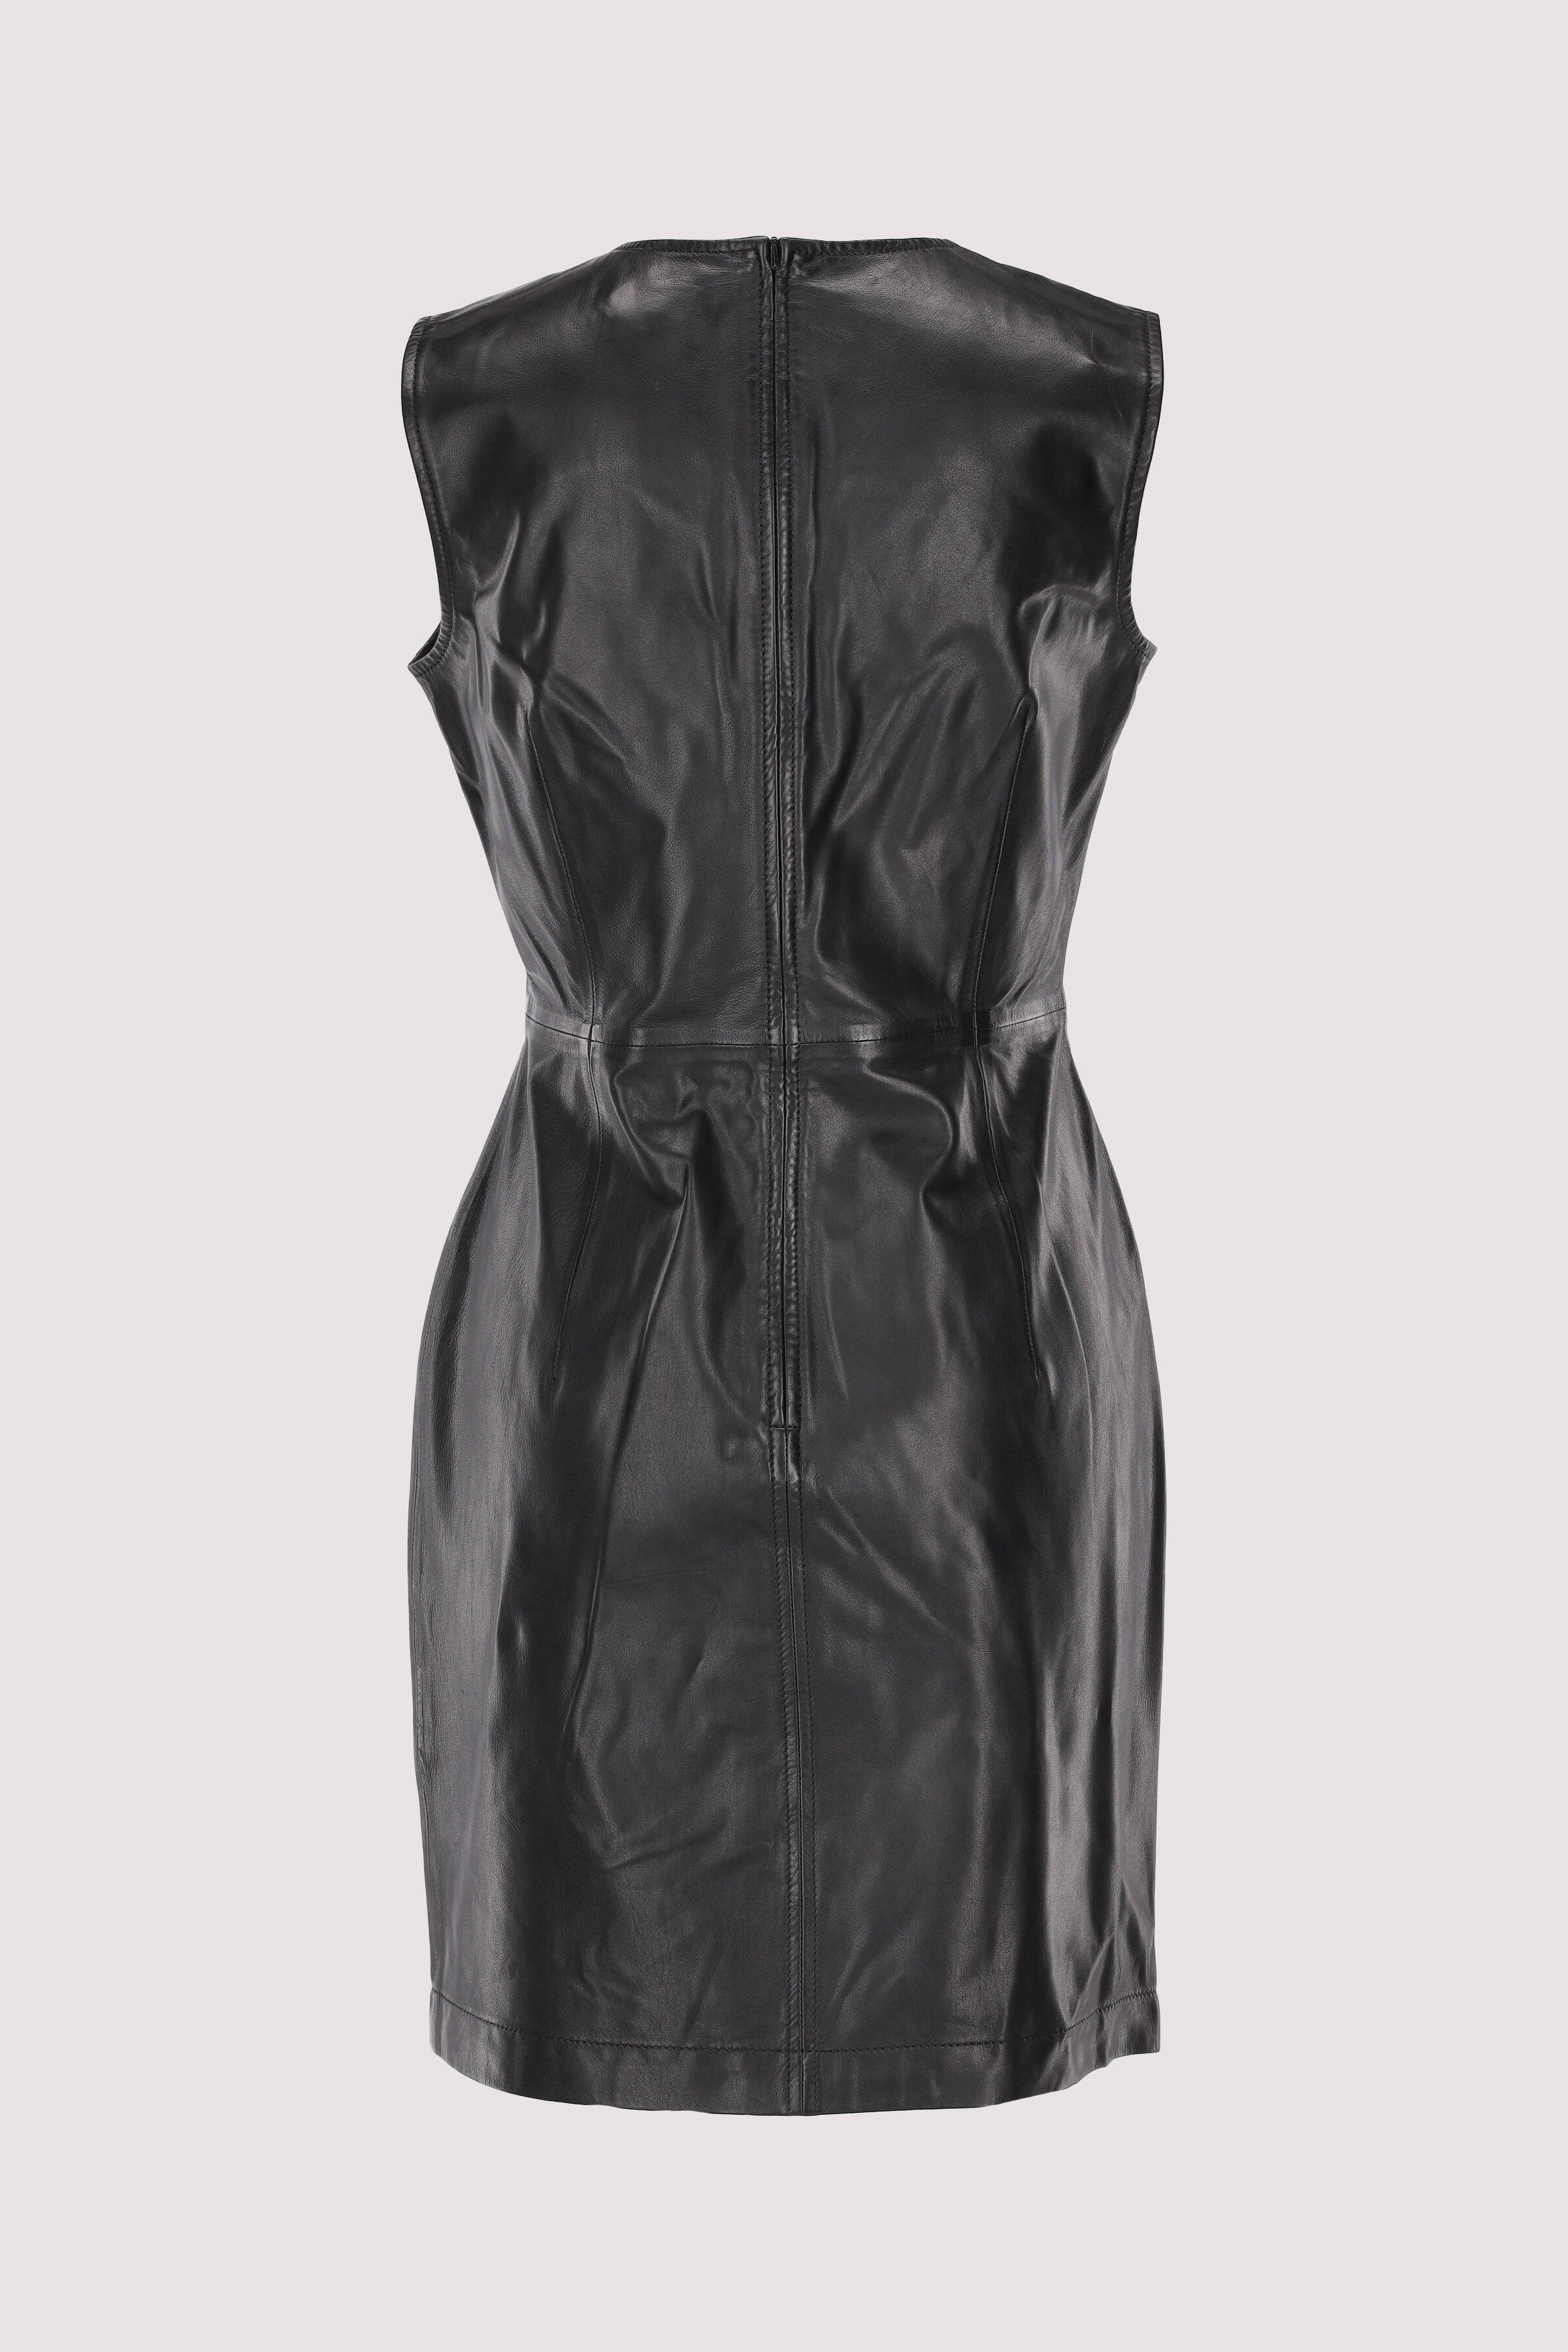 Leather dress, shorter length,